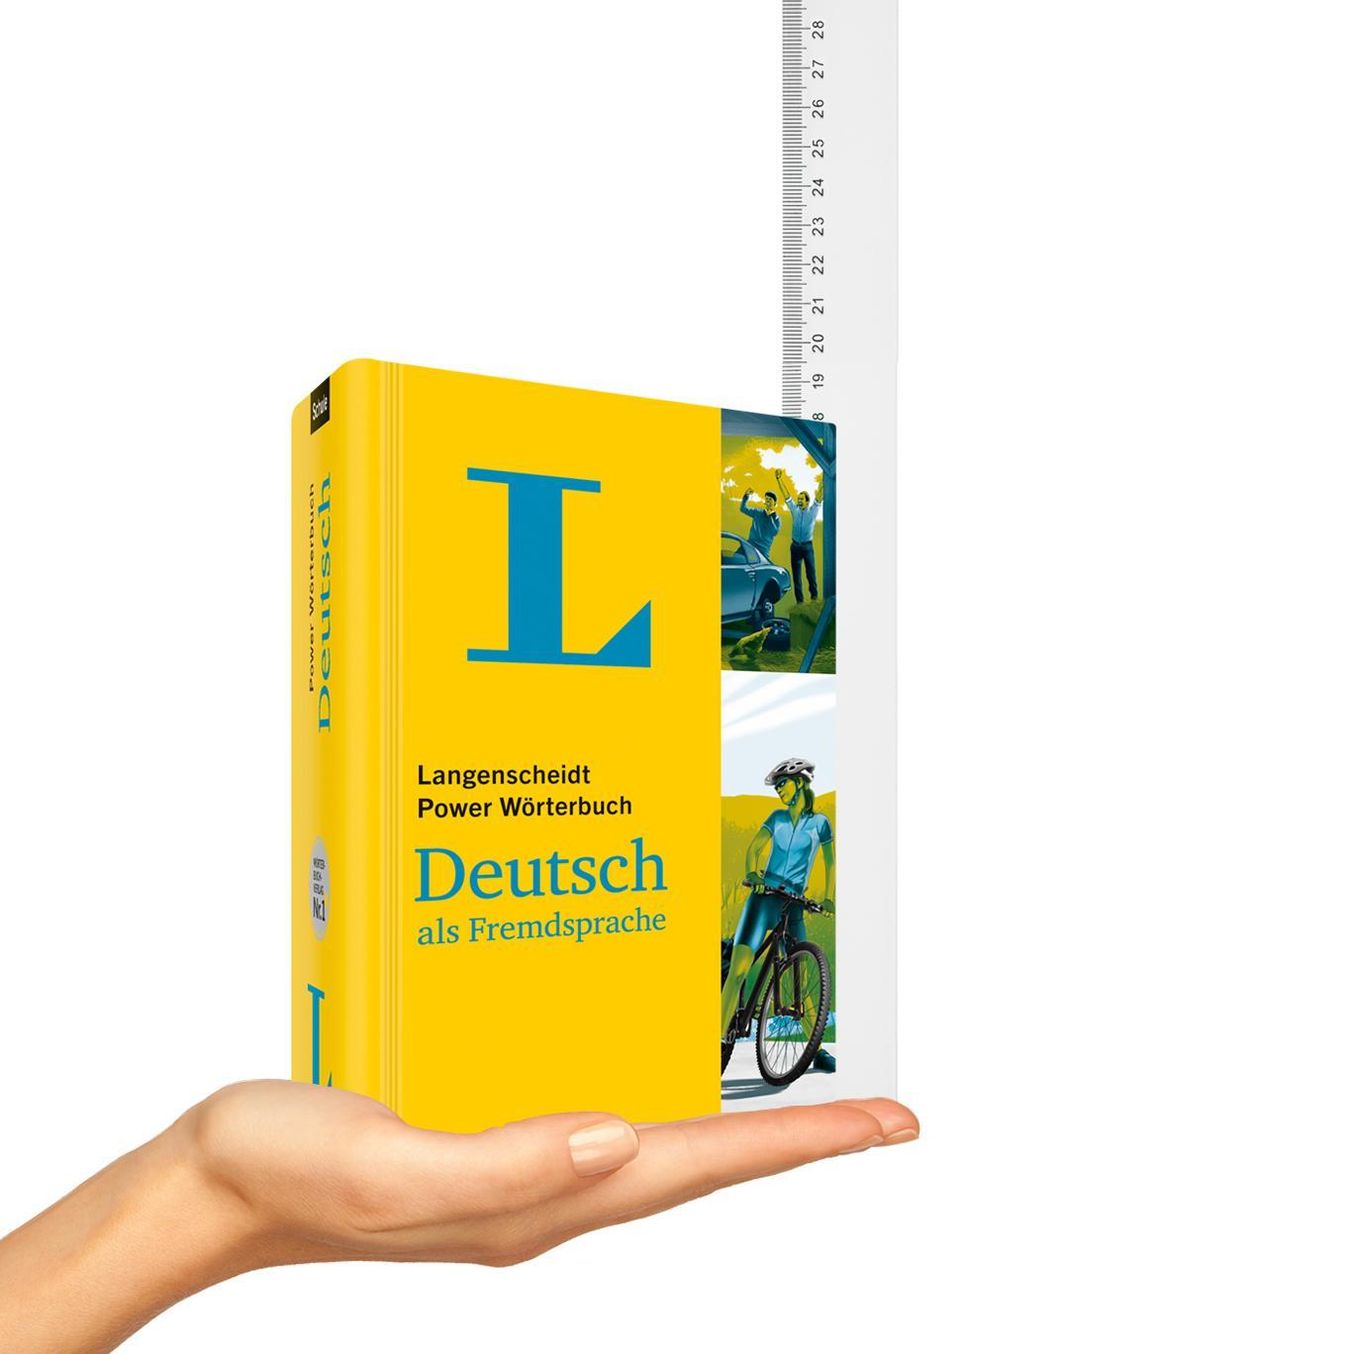 Langenscheidt Power Wörterbuch Deutsch als Fremdsprache Buch jetzt online  bei Weltbild.at bestellen